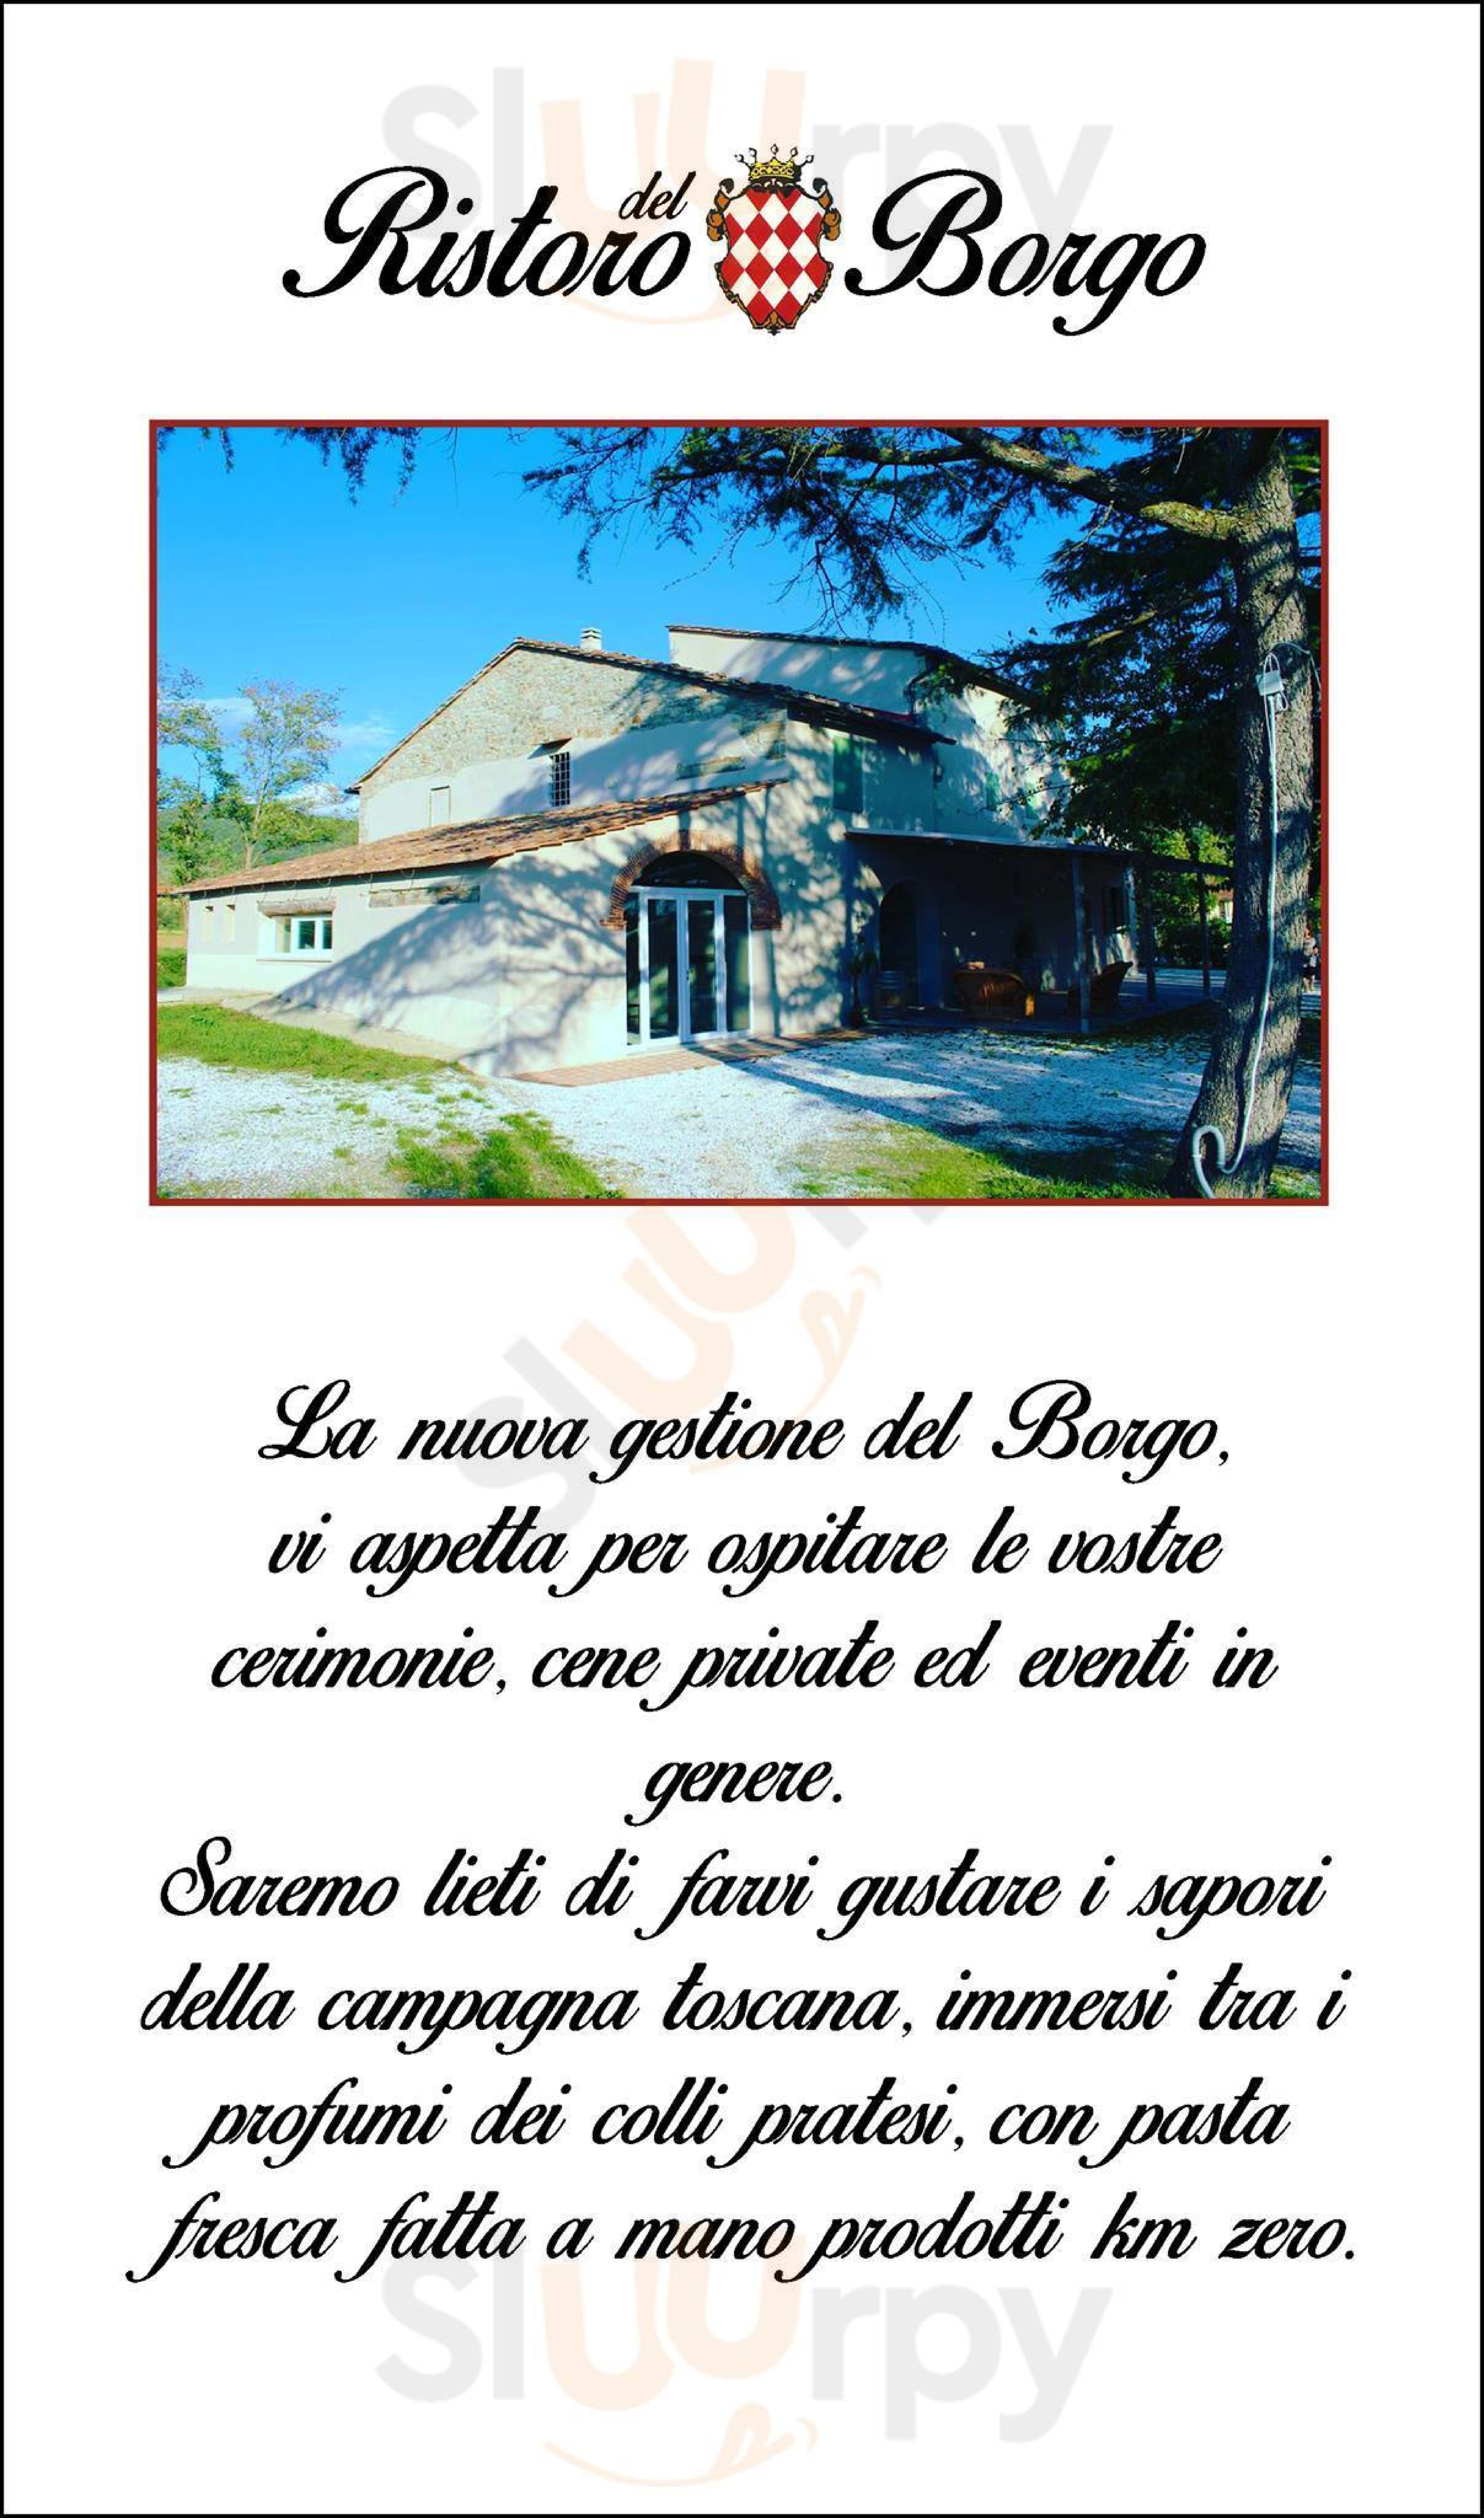 Ristoro del Borgo Montemurlo menù 1 pagina